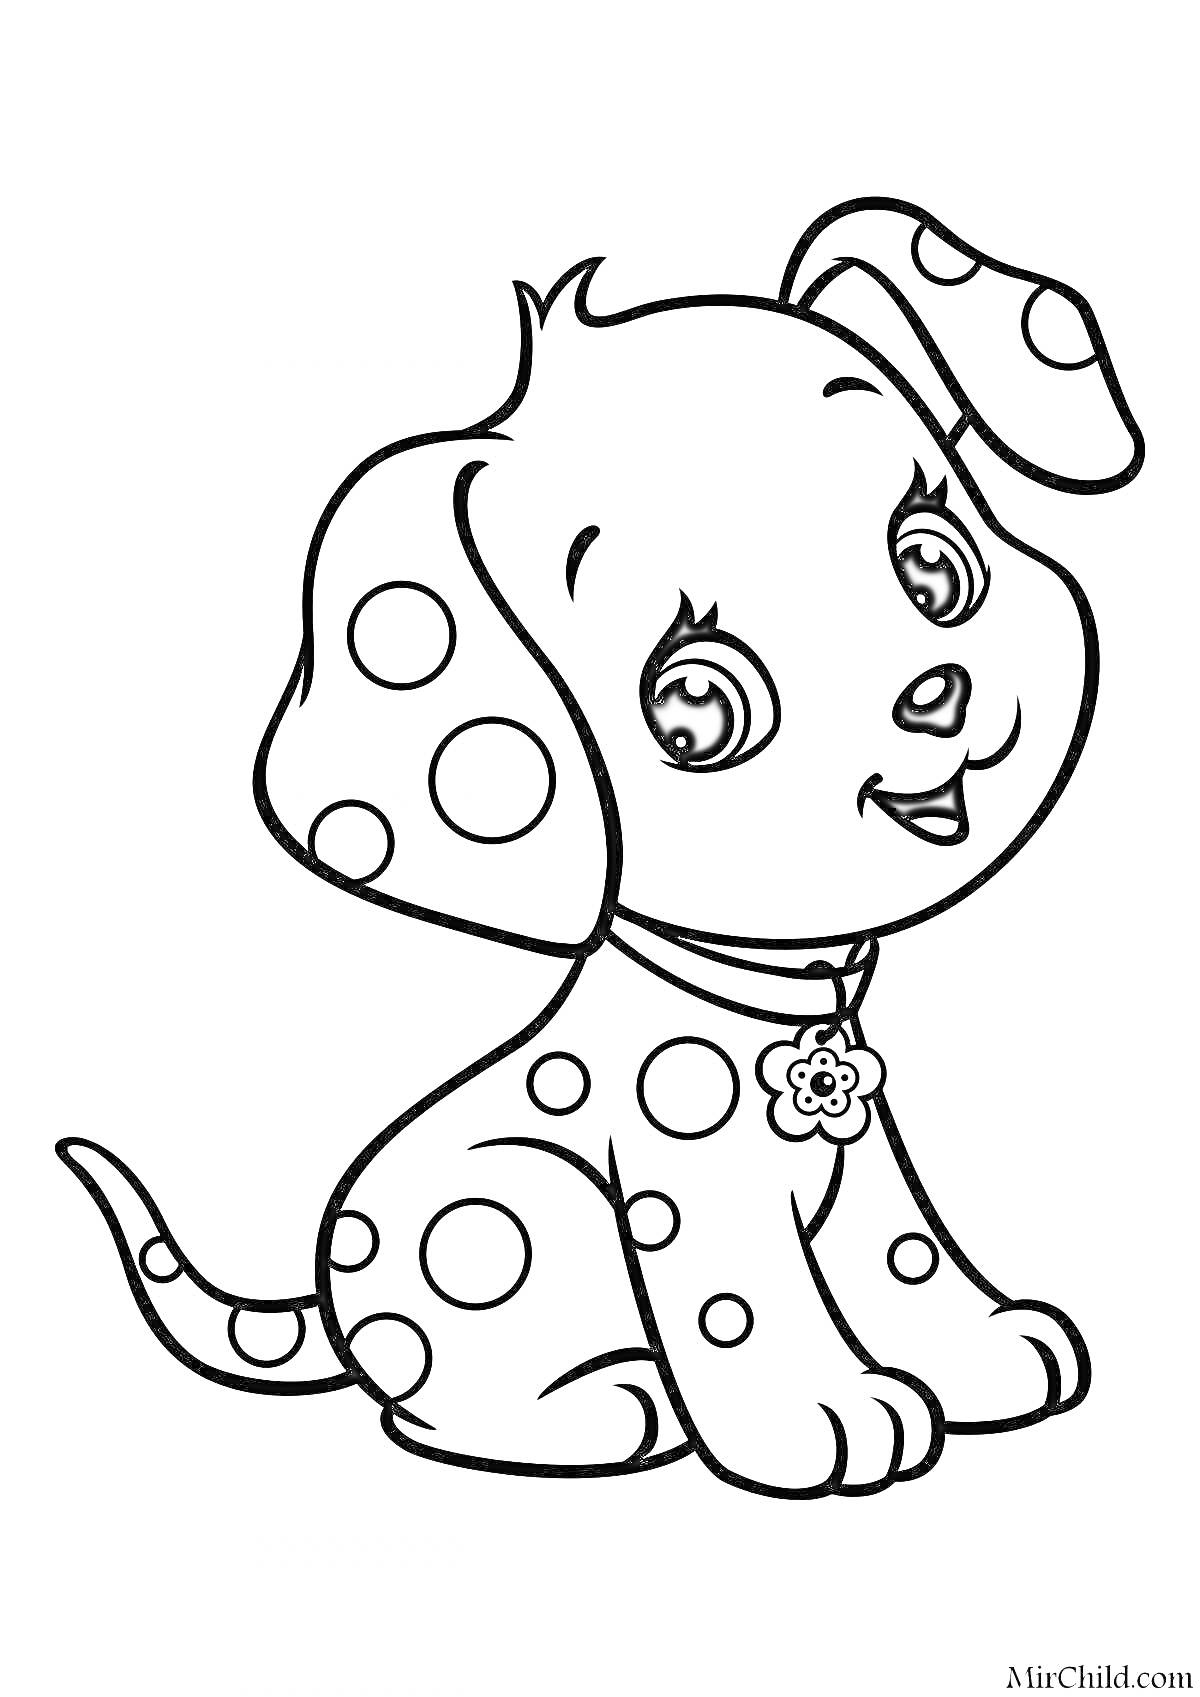 Раскраска Раскраска с изображением милого щенка в ошейнике с цветочной подвеской и пятнами по всему телу